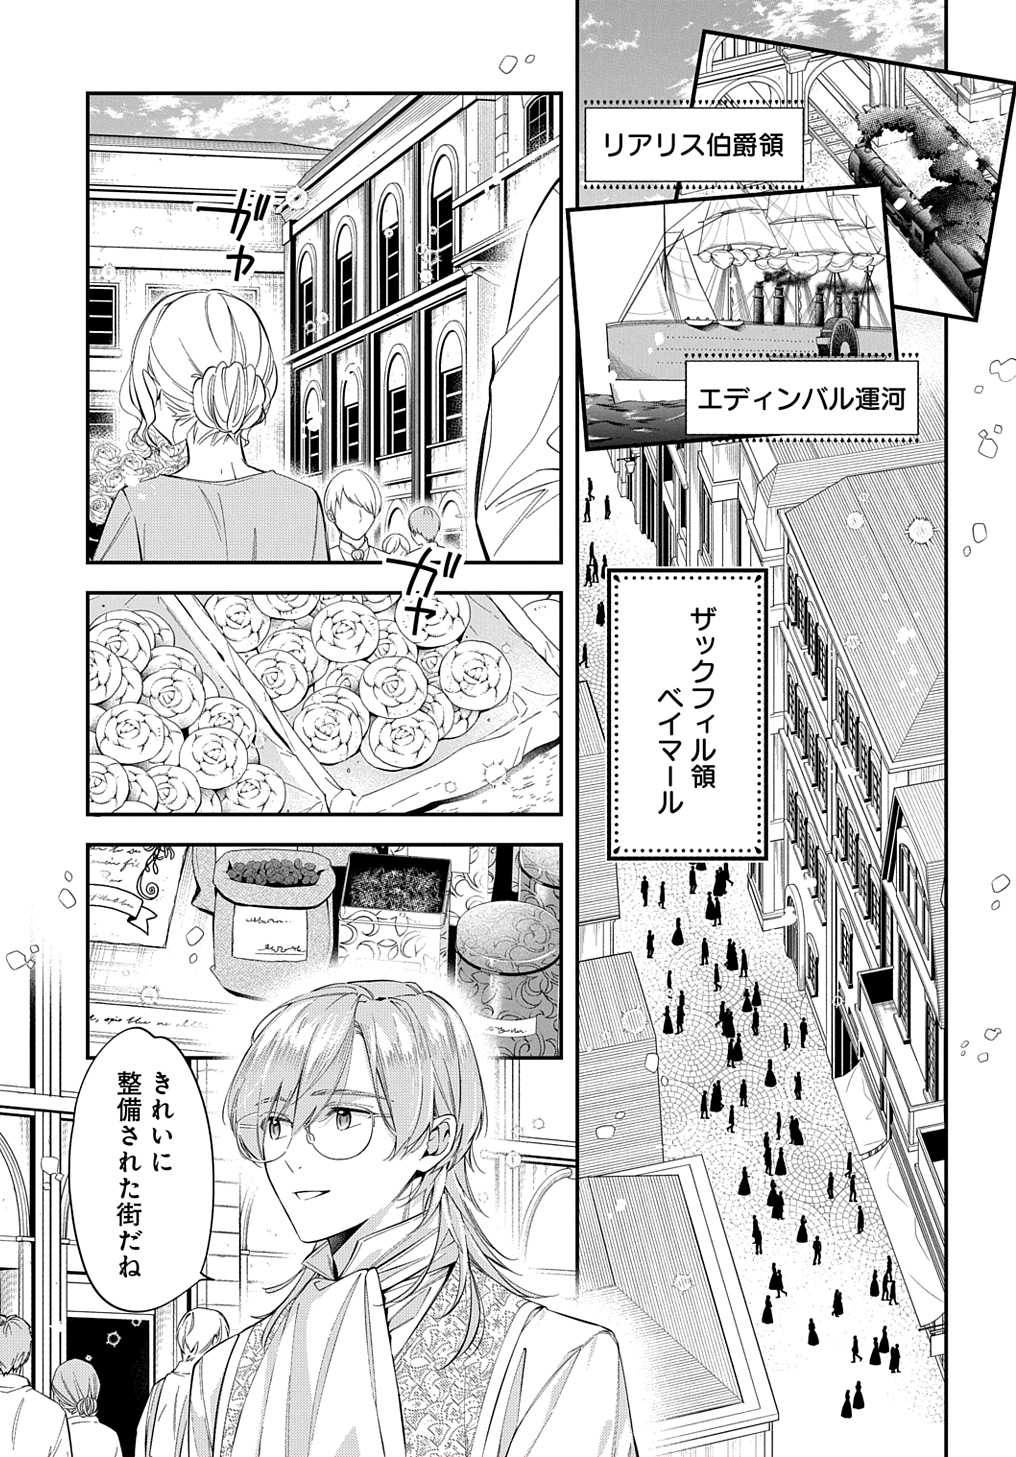 Outaishi ni Konyaku Hakisareta no de, Mou Baka no Furi wa Yameyou to Omoimasu - Chapter 24 - Page 7